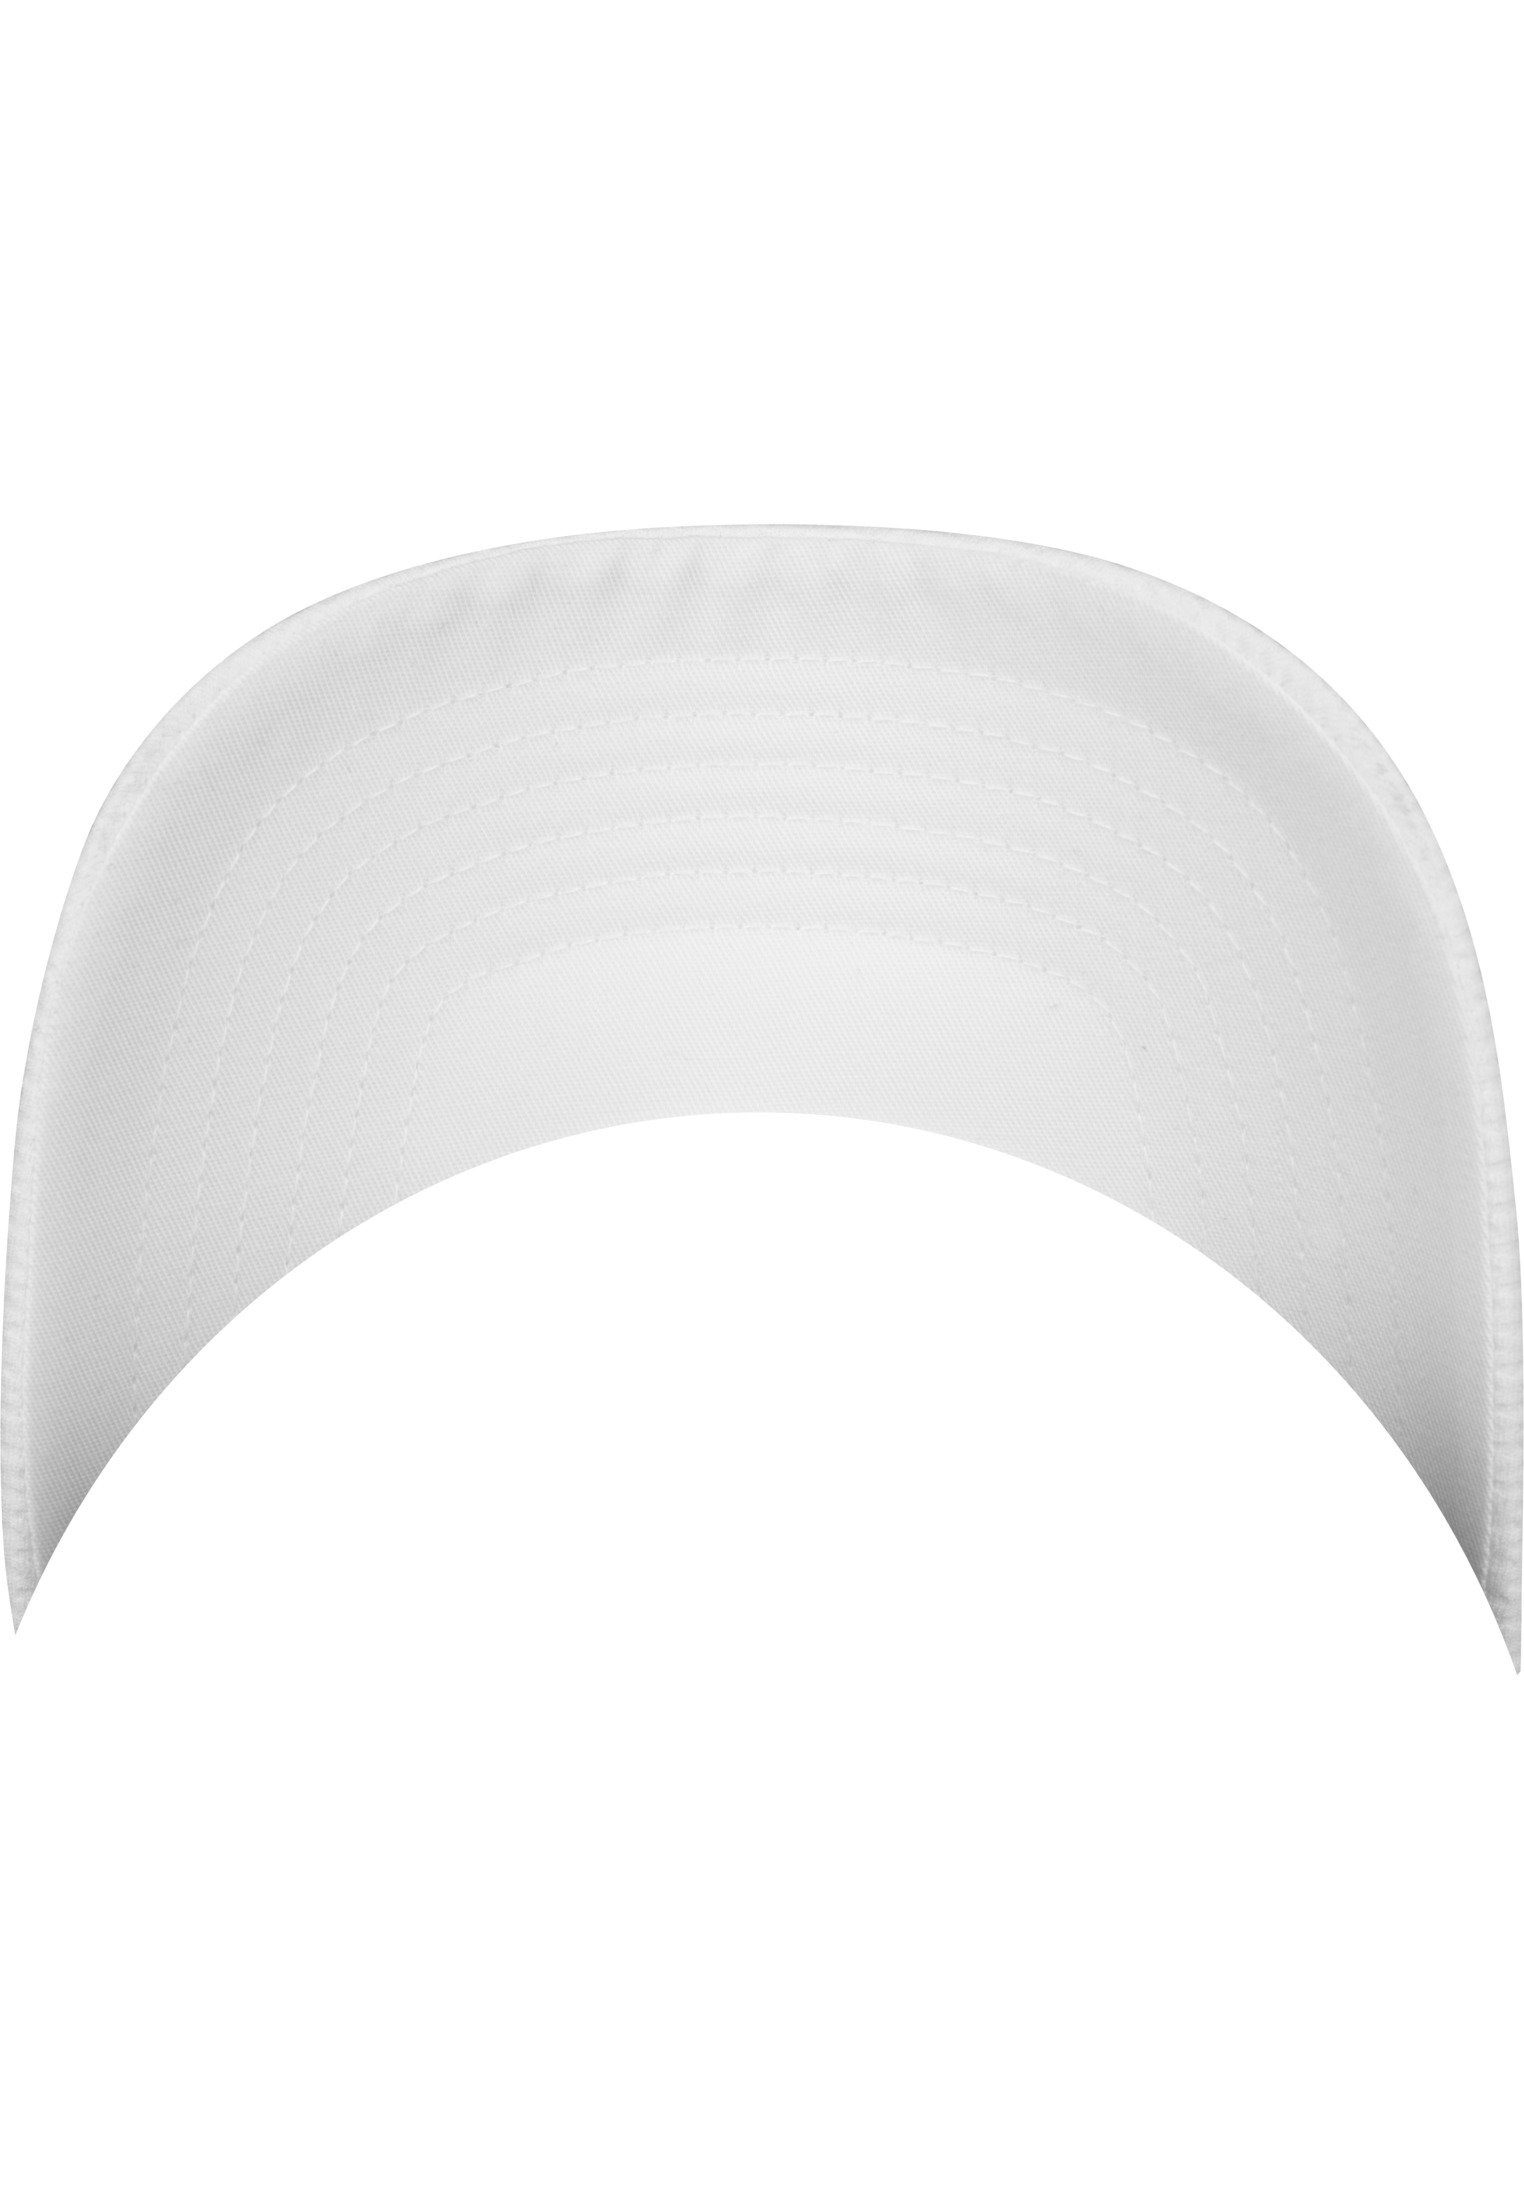 Flexfit Flex Cap white Cap 3D Flexfit Hexagon Jersey Accessoires